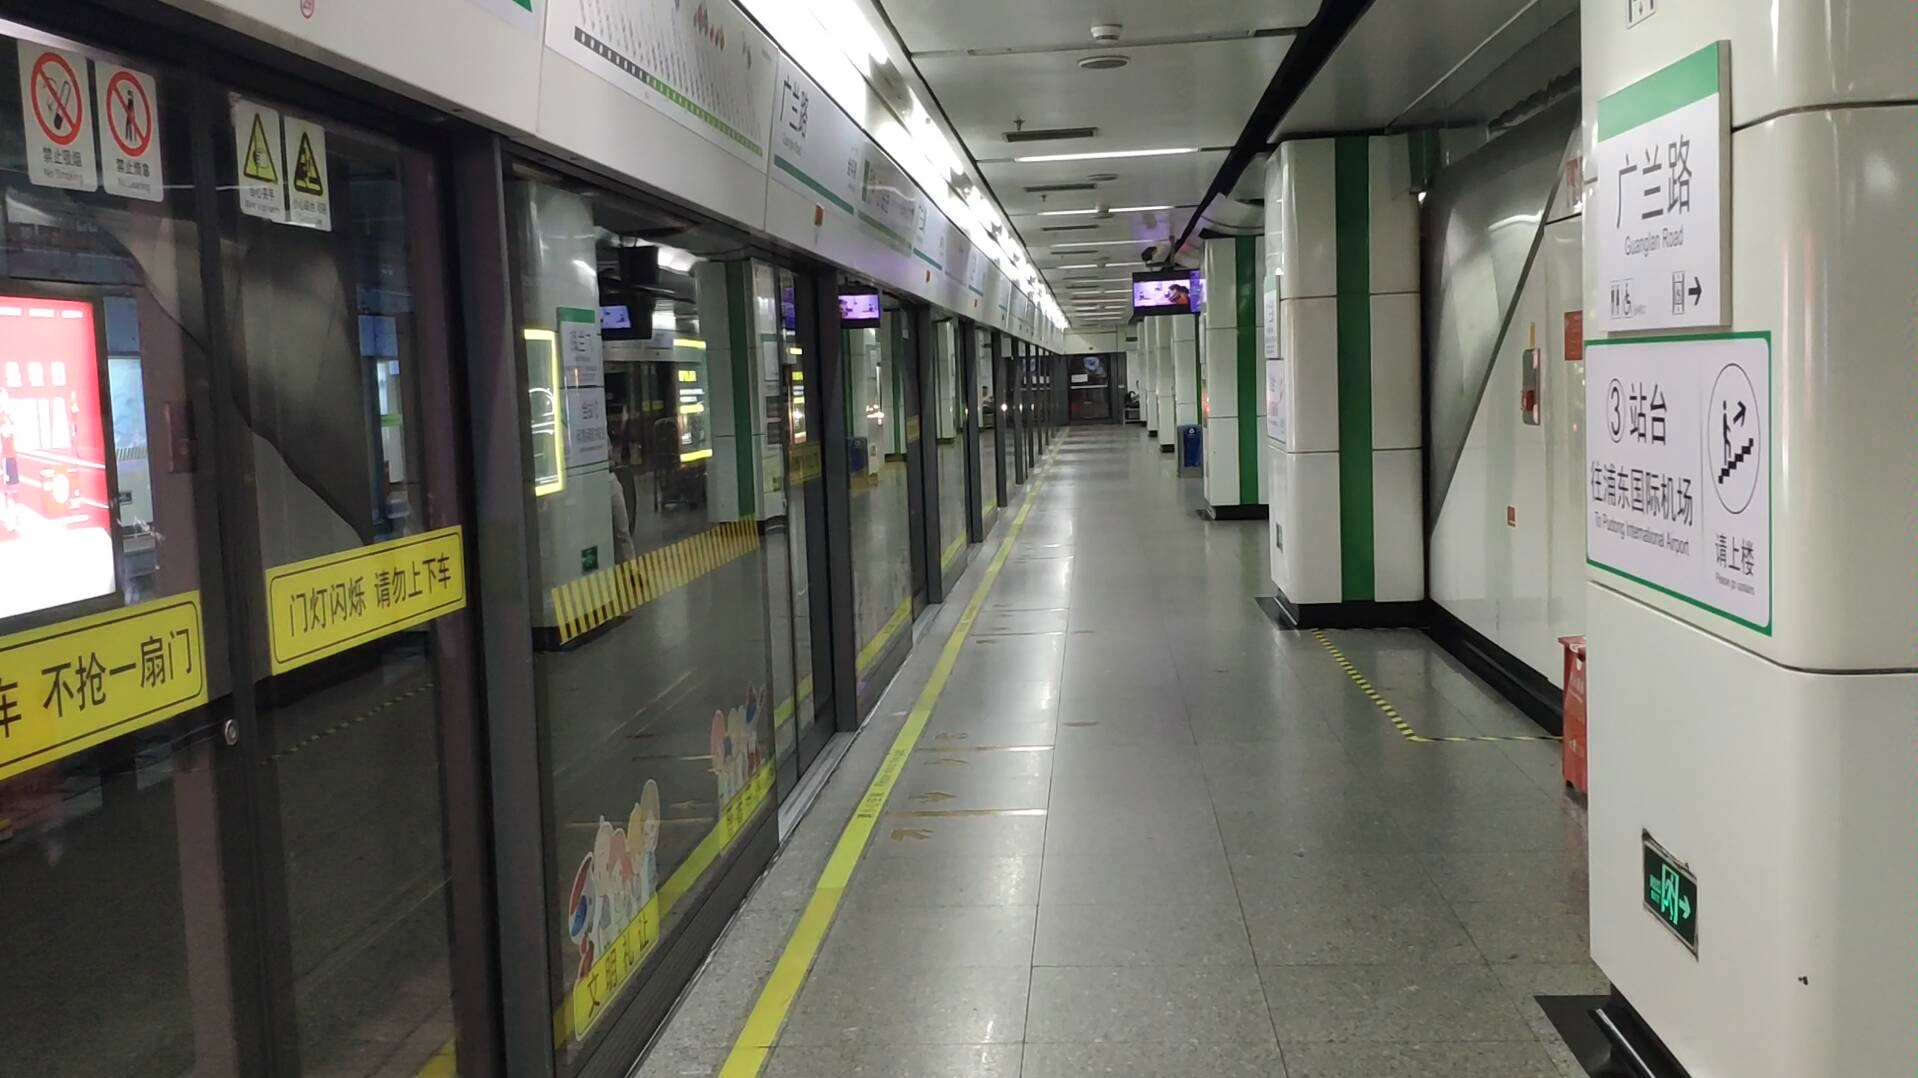 上海地铁2号线02a02型列车0251号车到达广兰路站2号站台(终点站)